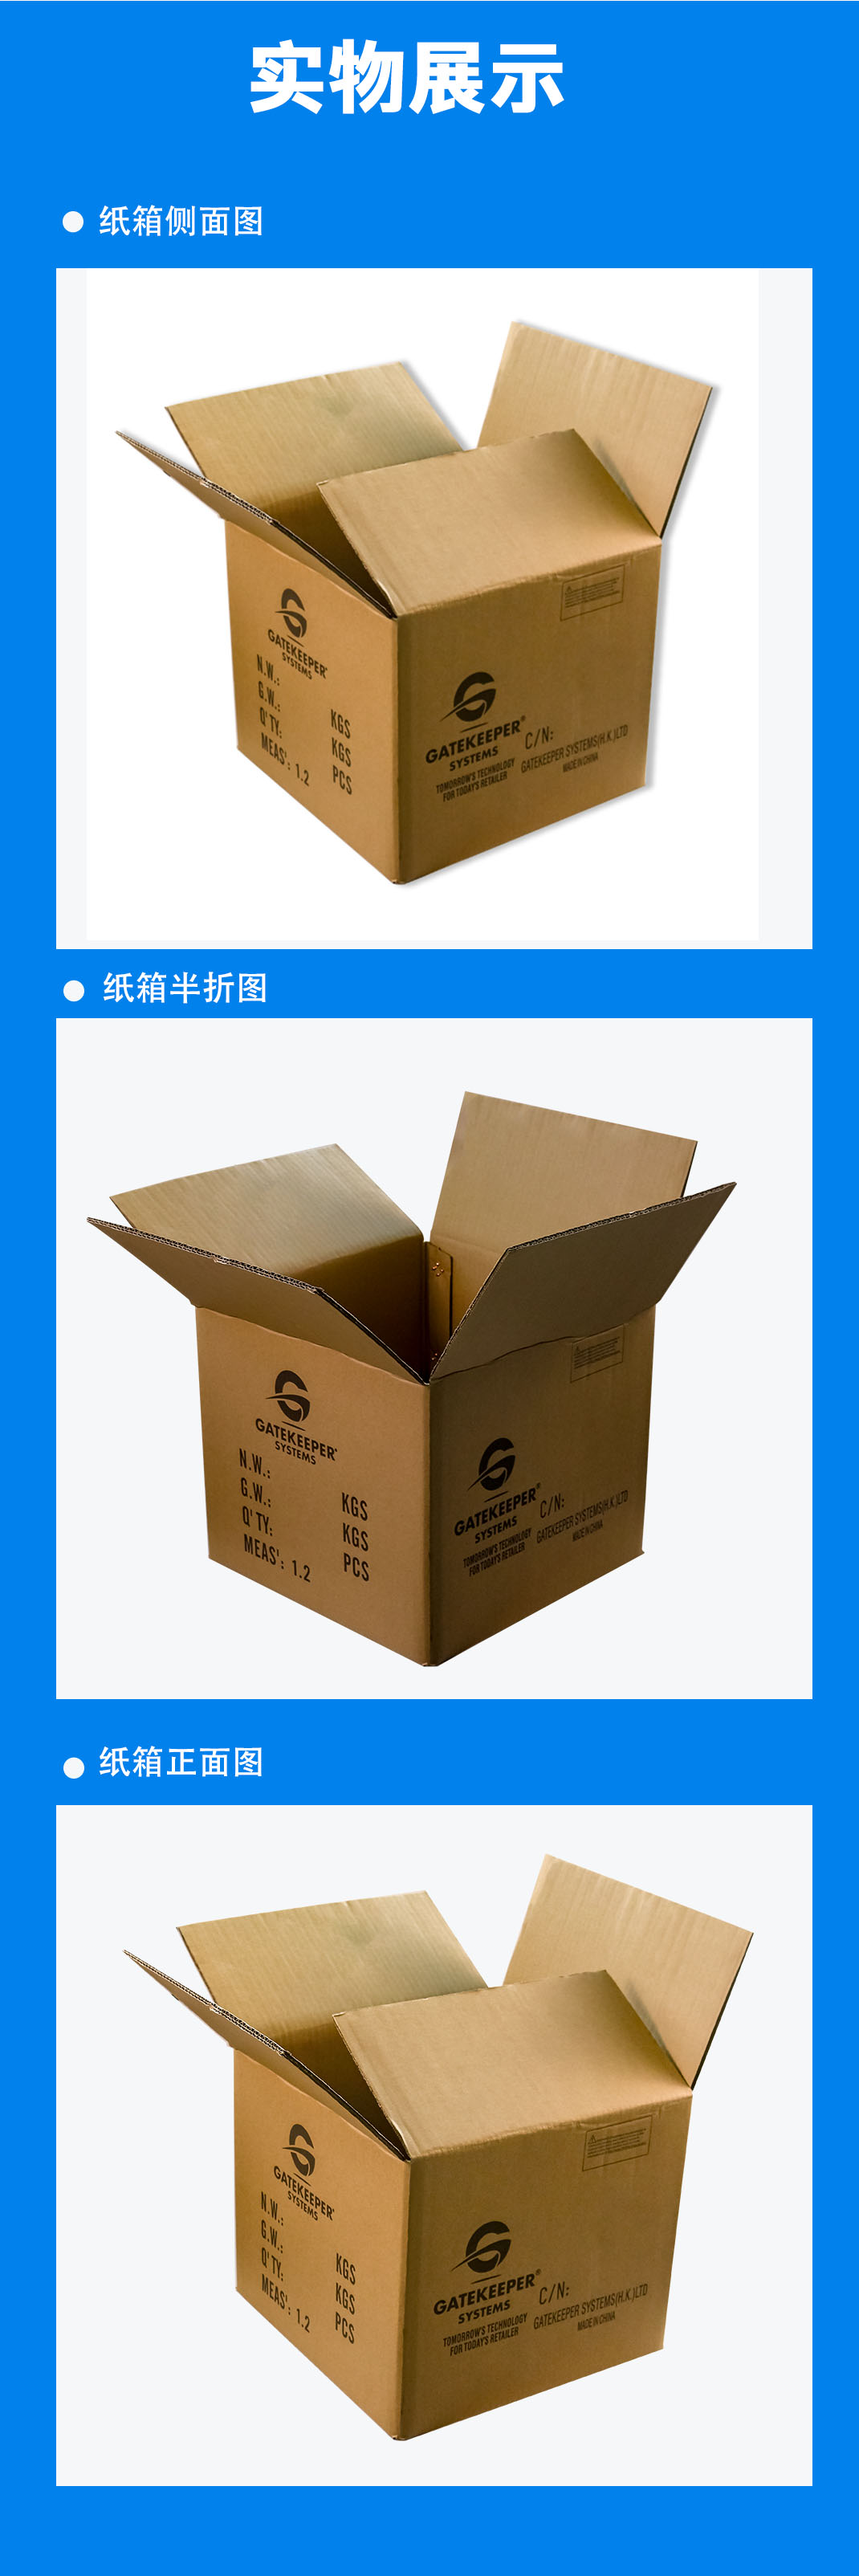 广元市纸箱常用的印刷分类